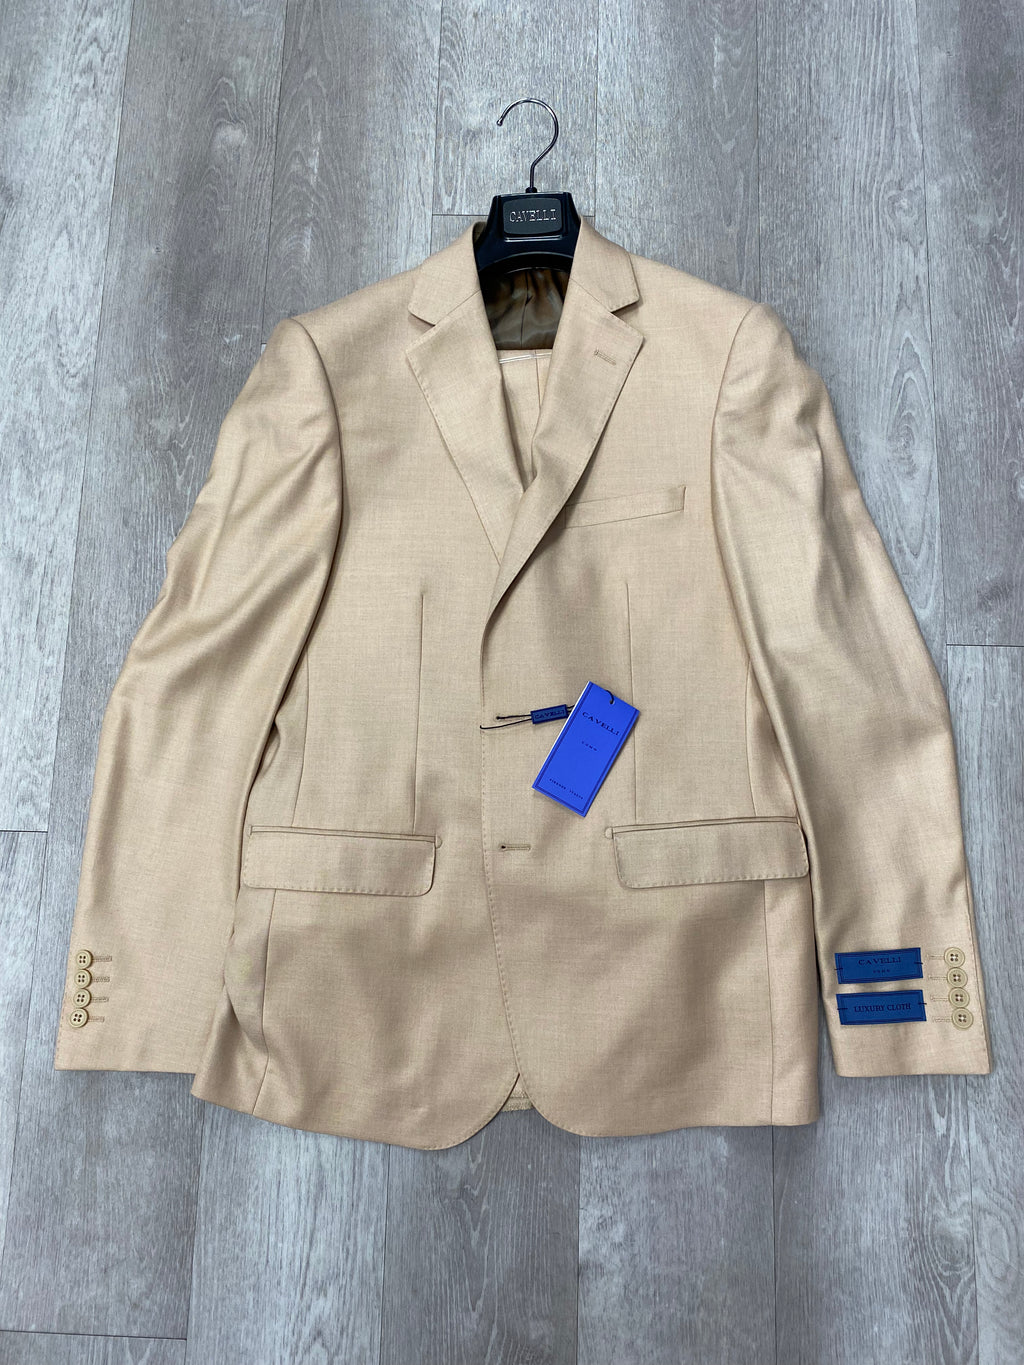 Cavelli Uomo Porto Slim Fit Suit 1986/18 Light Brown